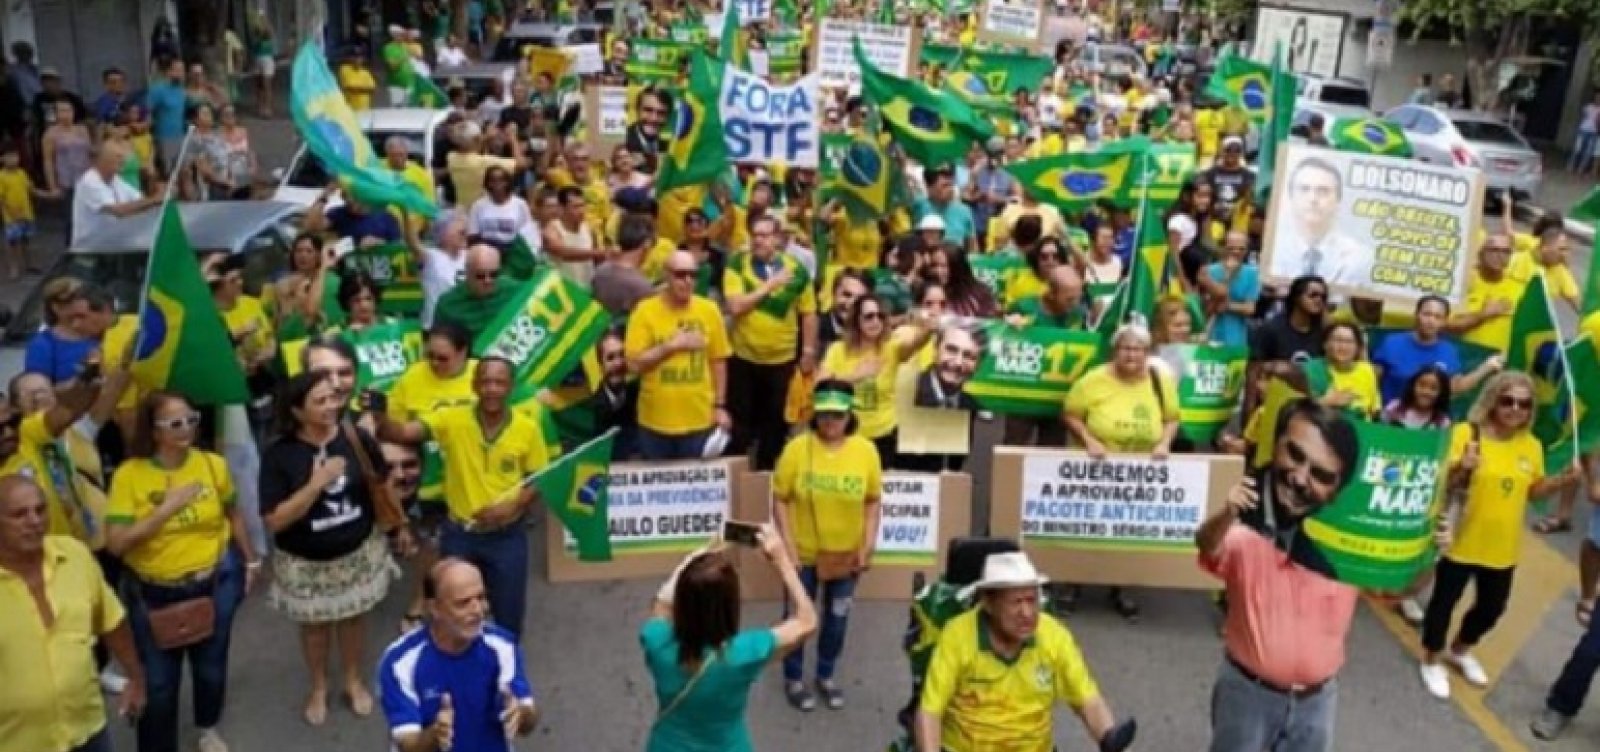  Bolsonaristas faturam até R$ 1 milhão com vídeos desacreditando processo eleitoral, aponta pesquisa